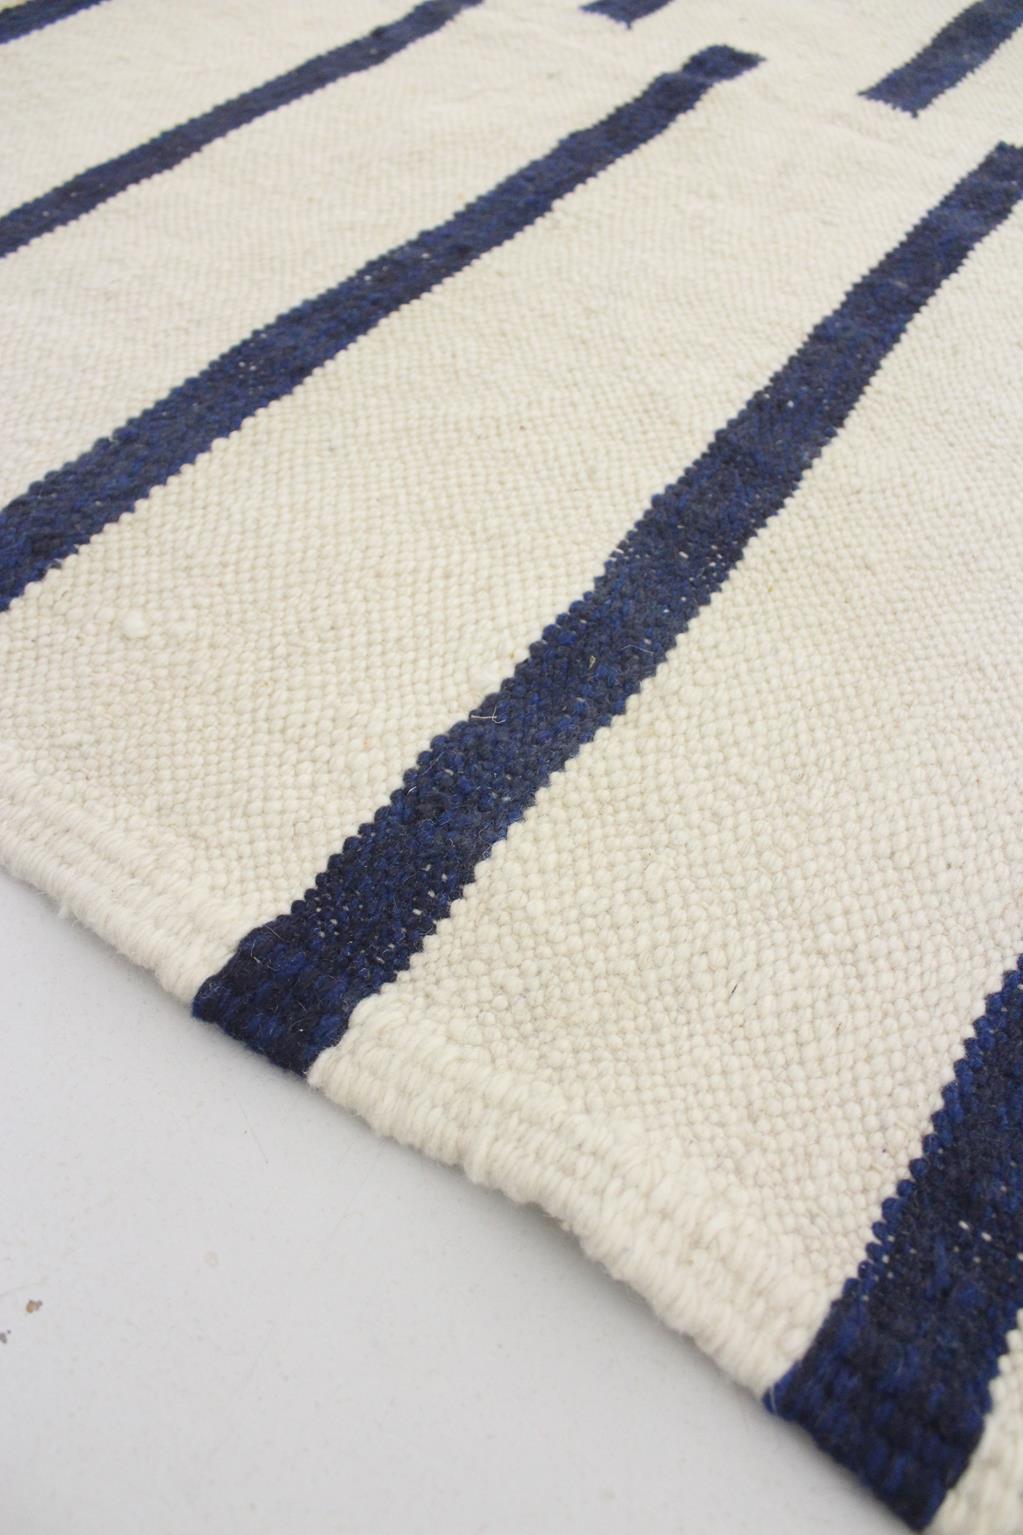 Modern Moroccan kilim rug - Cream/blue - 6.5x10.6feet / 200x323cm For Sale 5